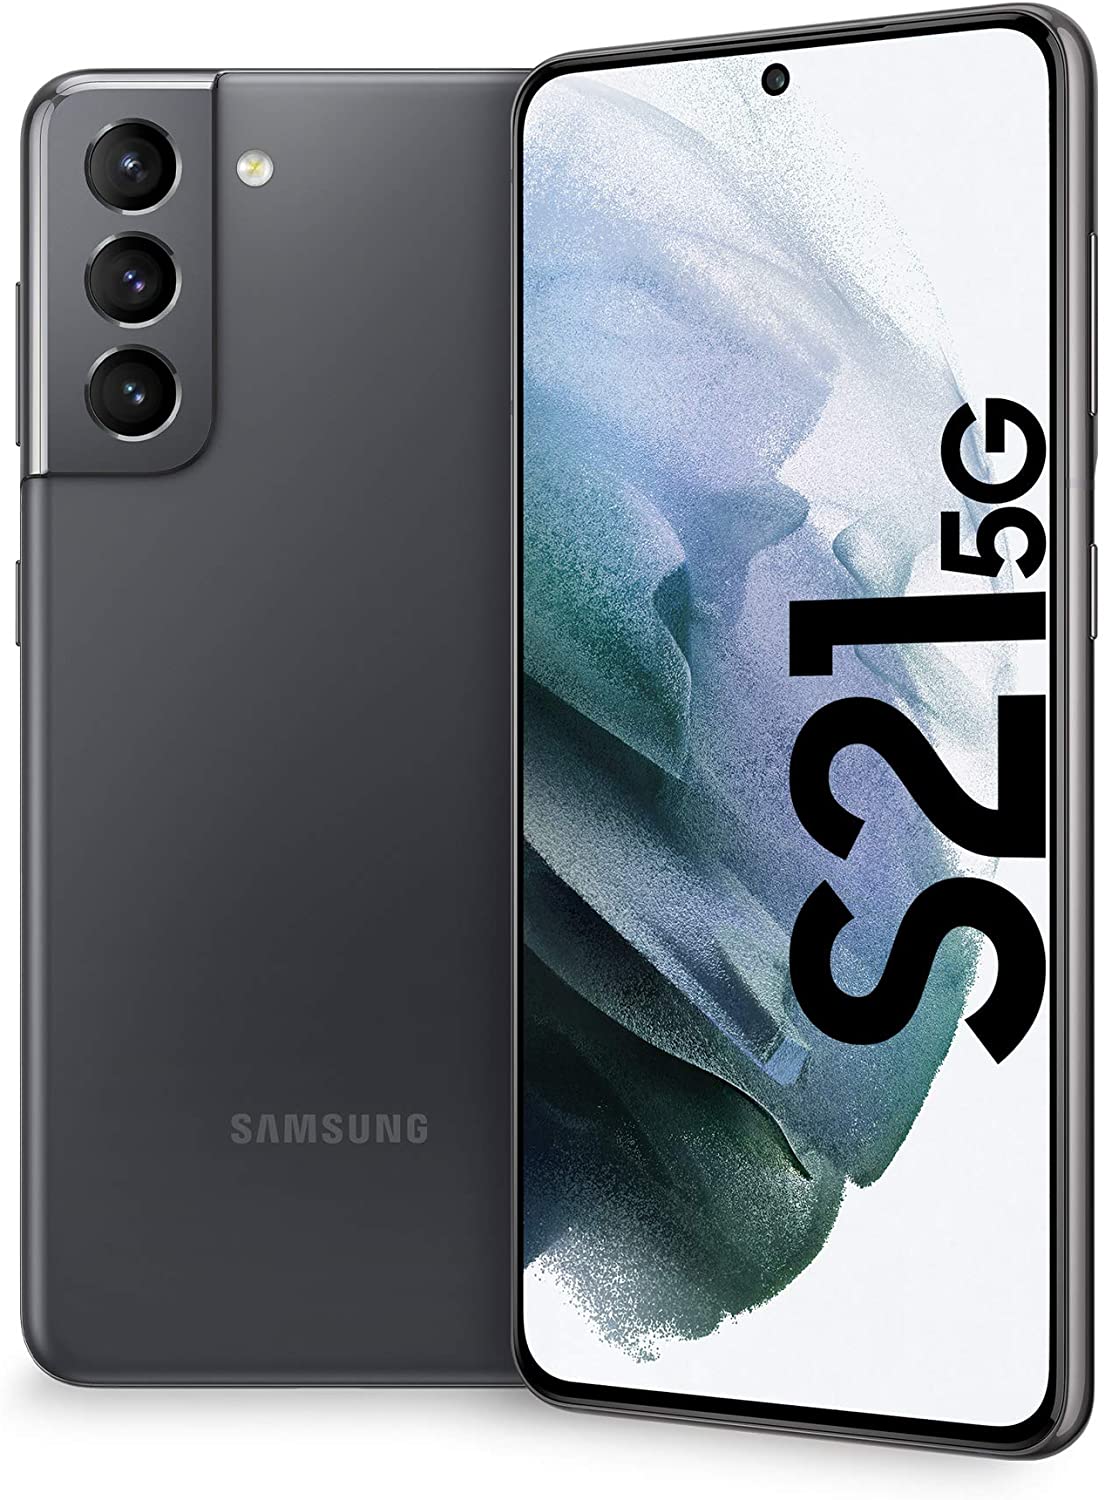 Offerta Samsung Galaxy S21 5G: da Esselunga al prezzo di 599 euro